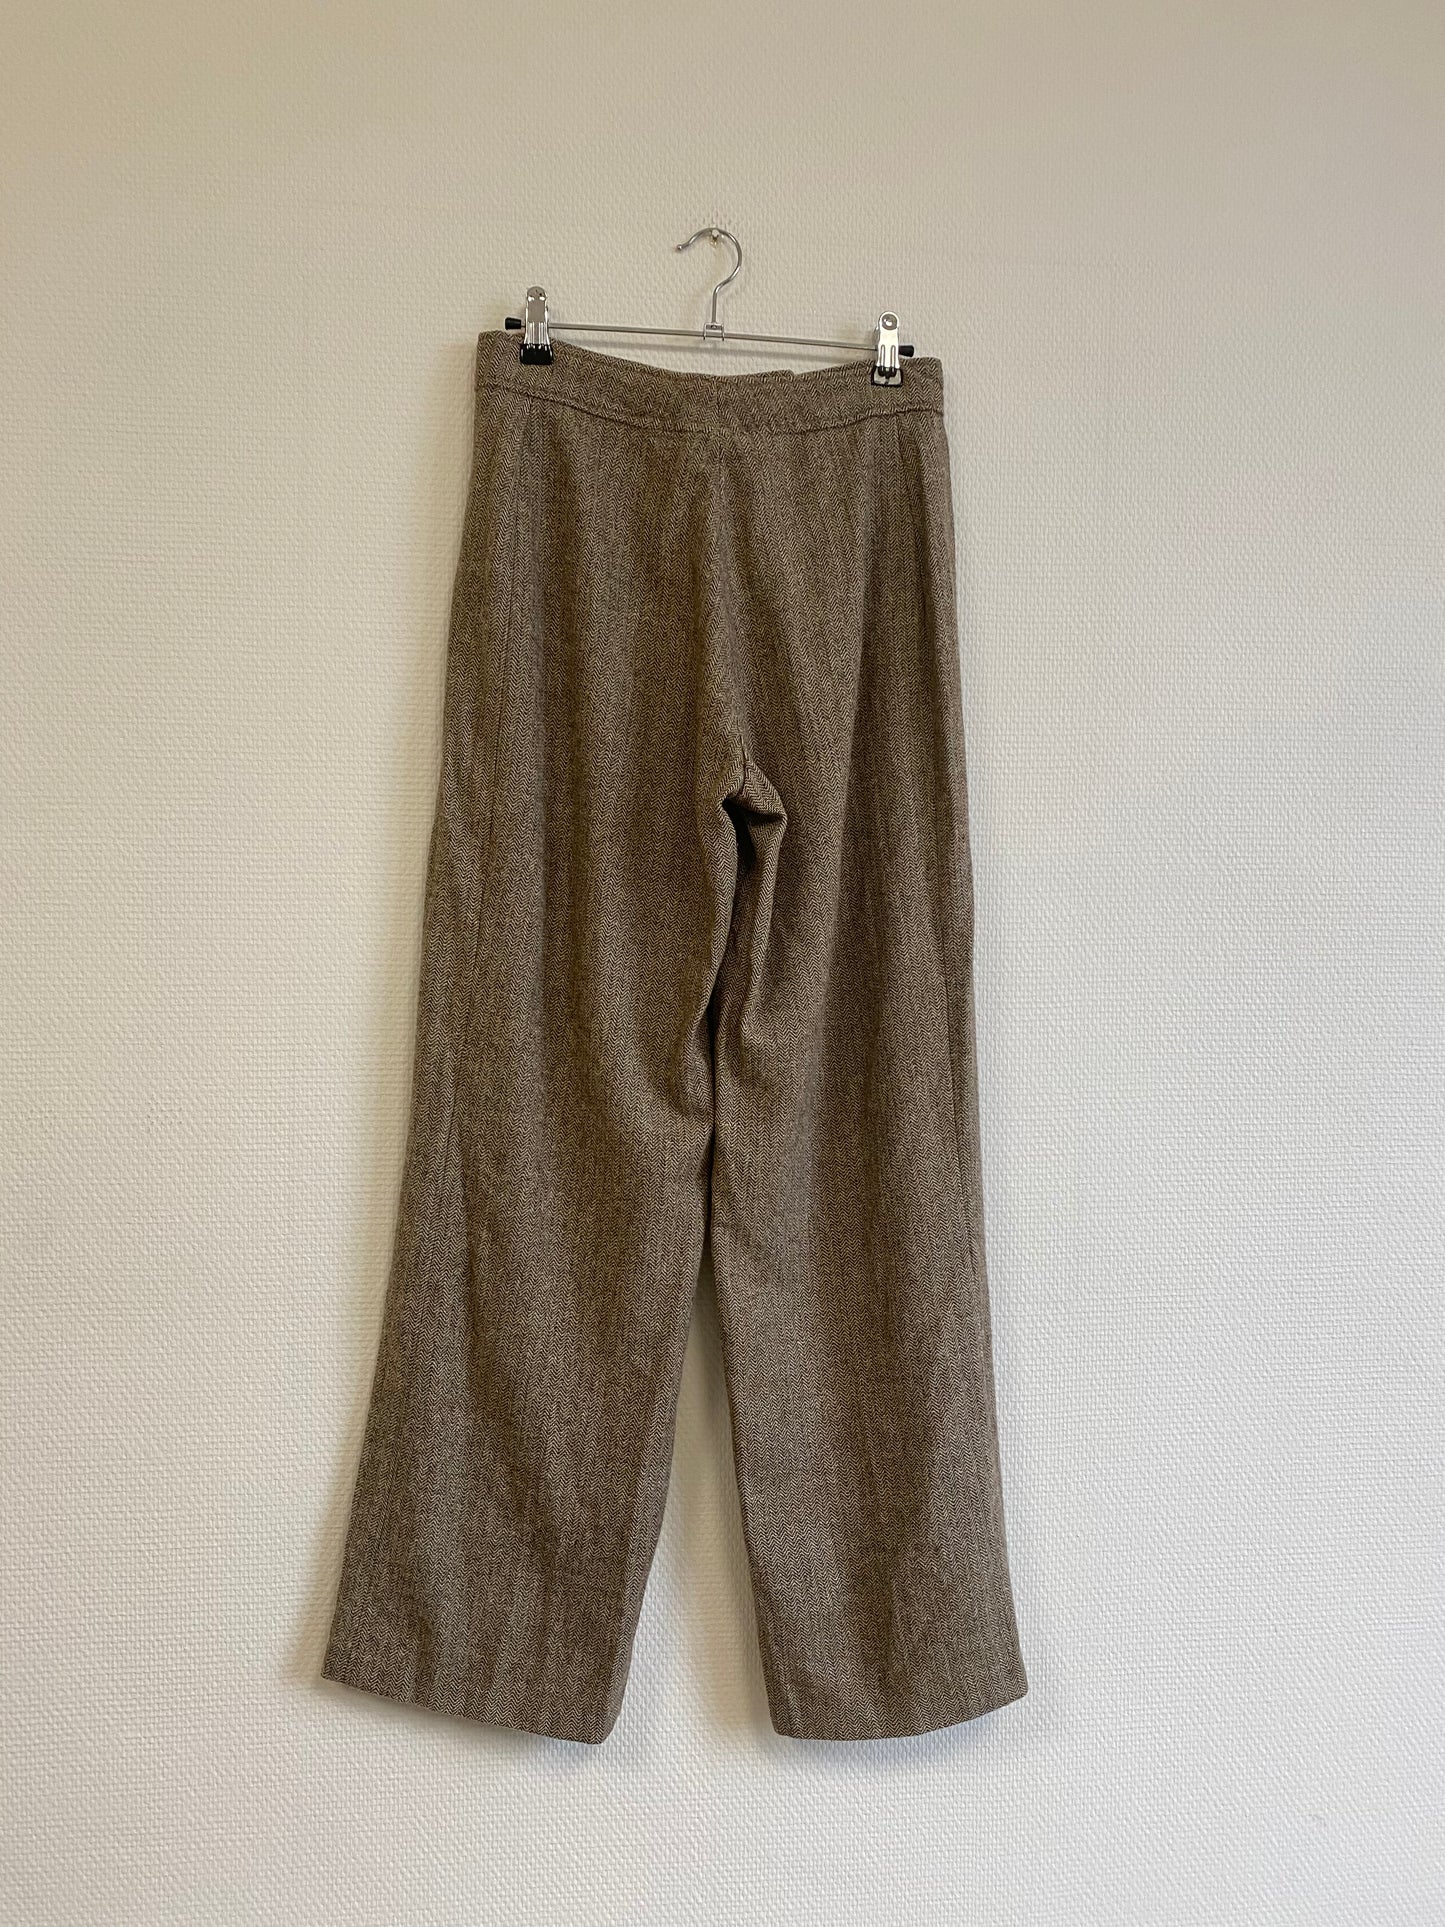 Pantalon chevron 70s